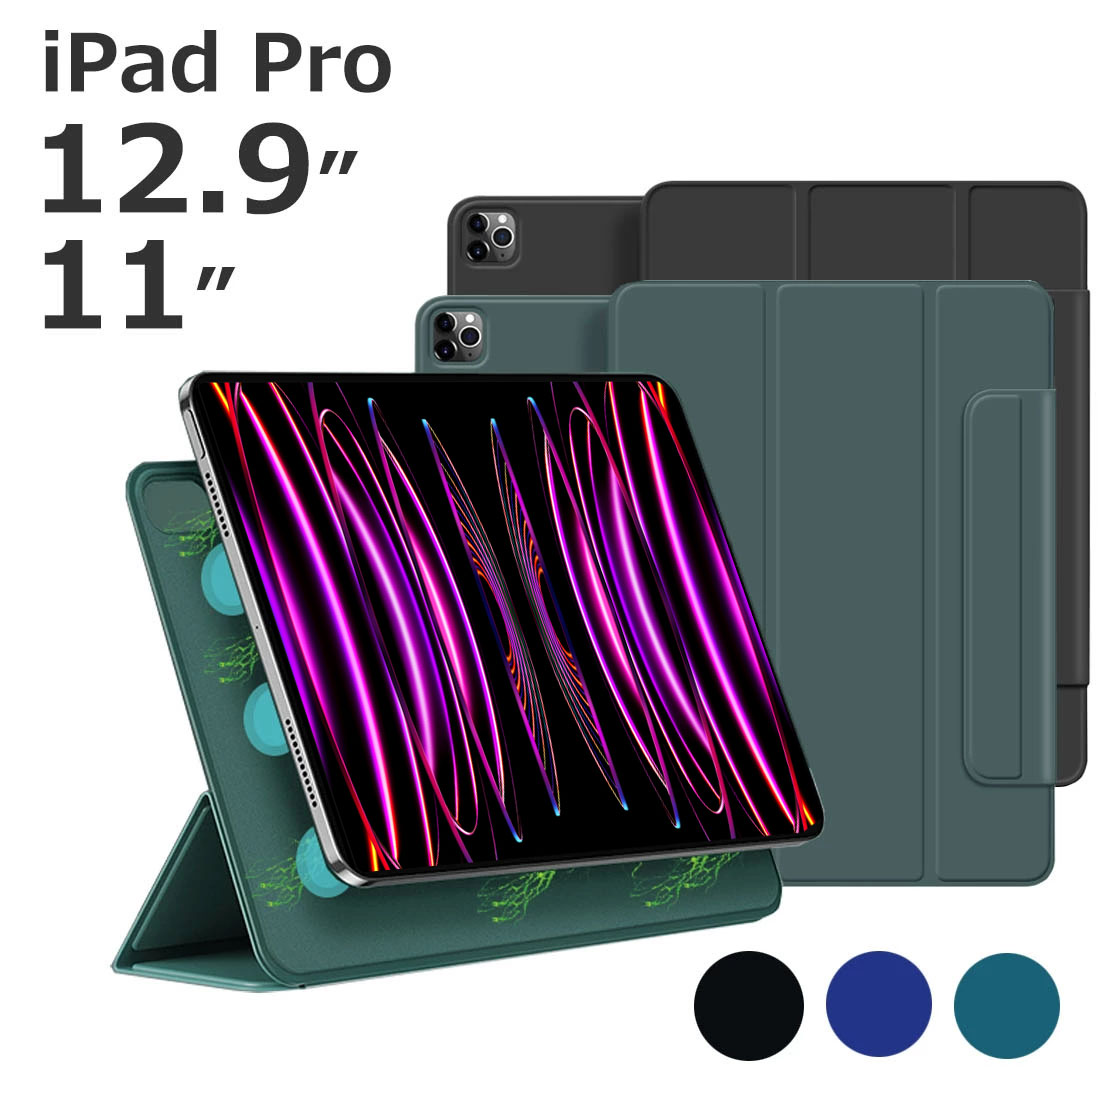 iPadケース ipadカバー Pro11 Pro12.9 マグネット Pad 2020 2018 アイパッドケース iPad iPad保護 オートスリープ スタンド applepencil ホルダー ブラック ブルー かわいい マグネット iPadカバーblack blue おしゃれ 母の日